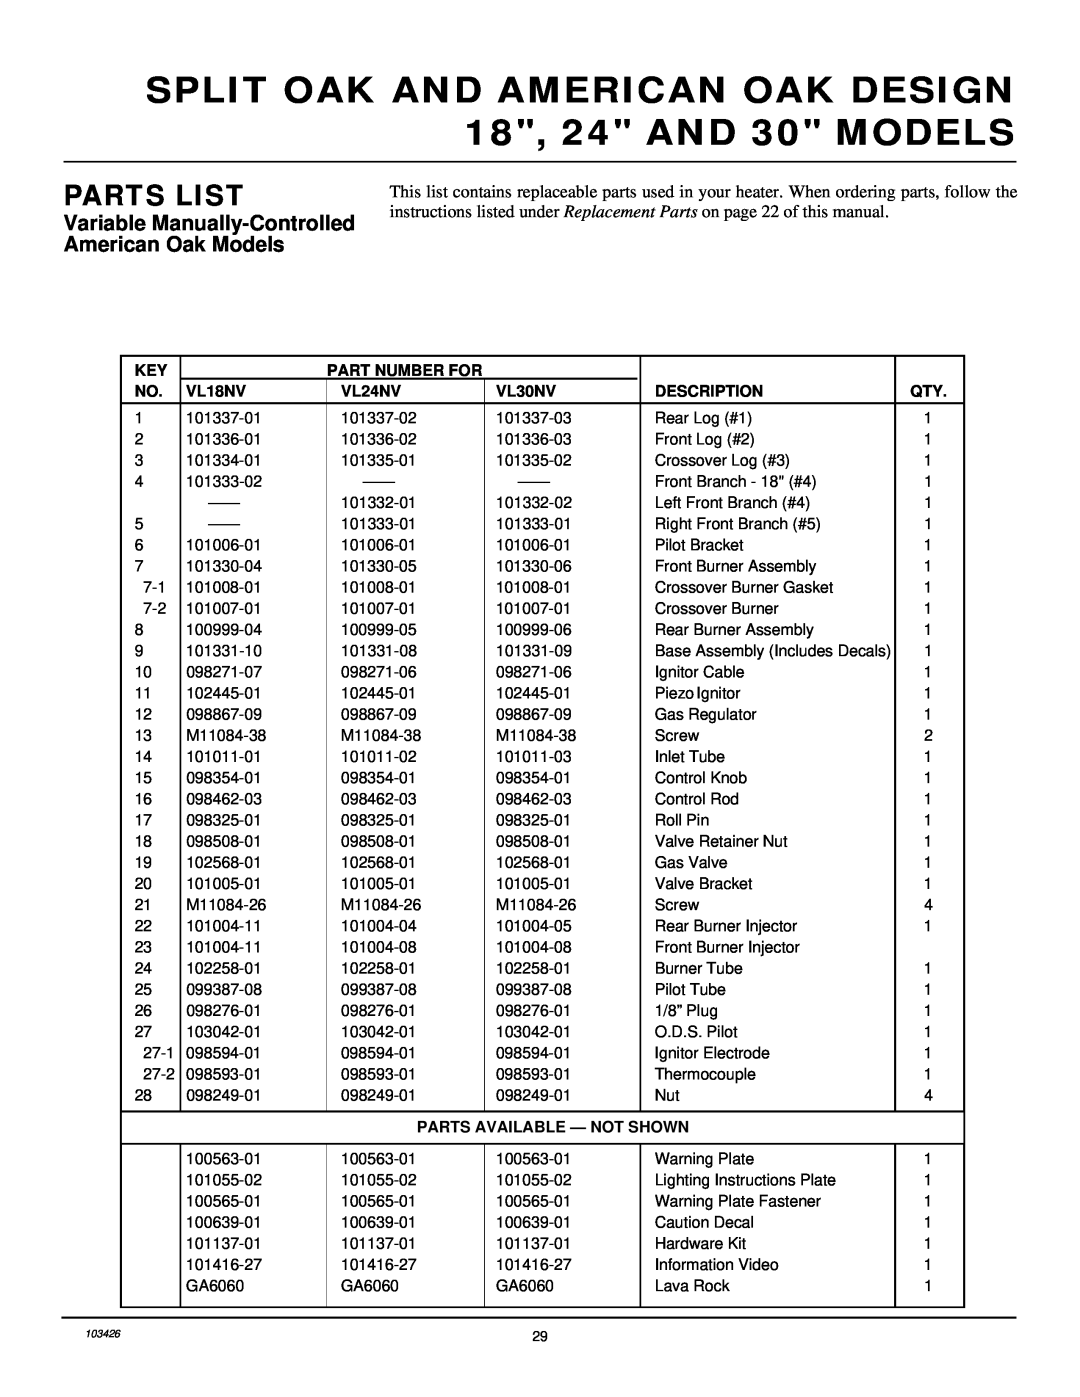 Desa 103426-01 Variable Manually-ControlledAmerican Oak Models, Parts List, Part Number For, VL18NV, VL24NV, VL30NV 